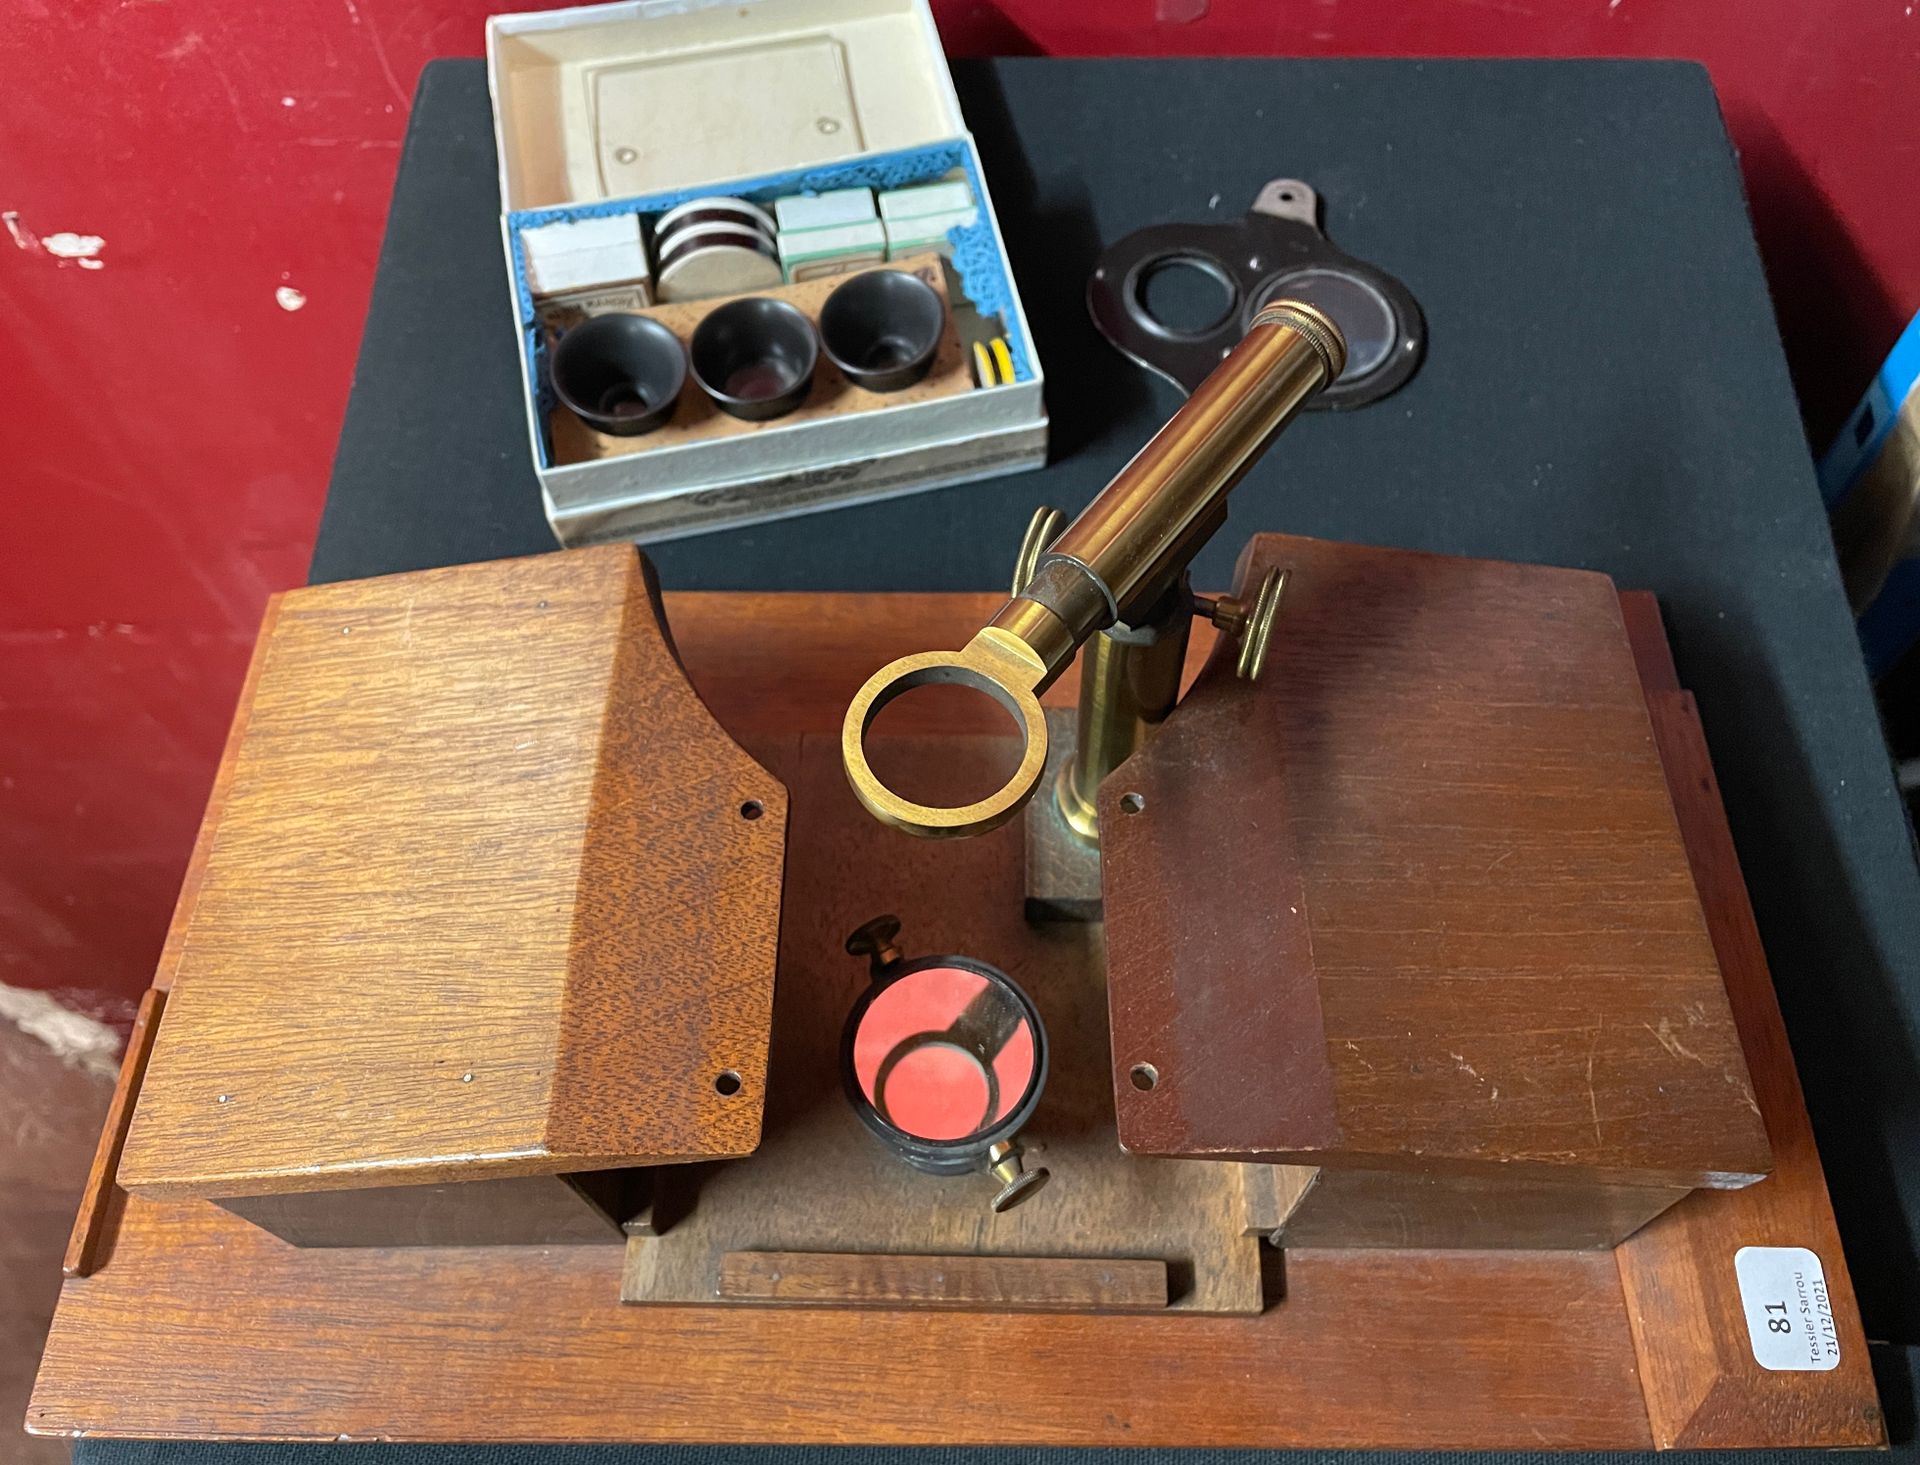 Null Seziermikroskop vom Typ Vérick, das dem Maler Théodore CHAUVEL gehörte (unv&hellip;